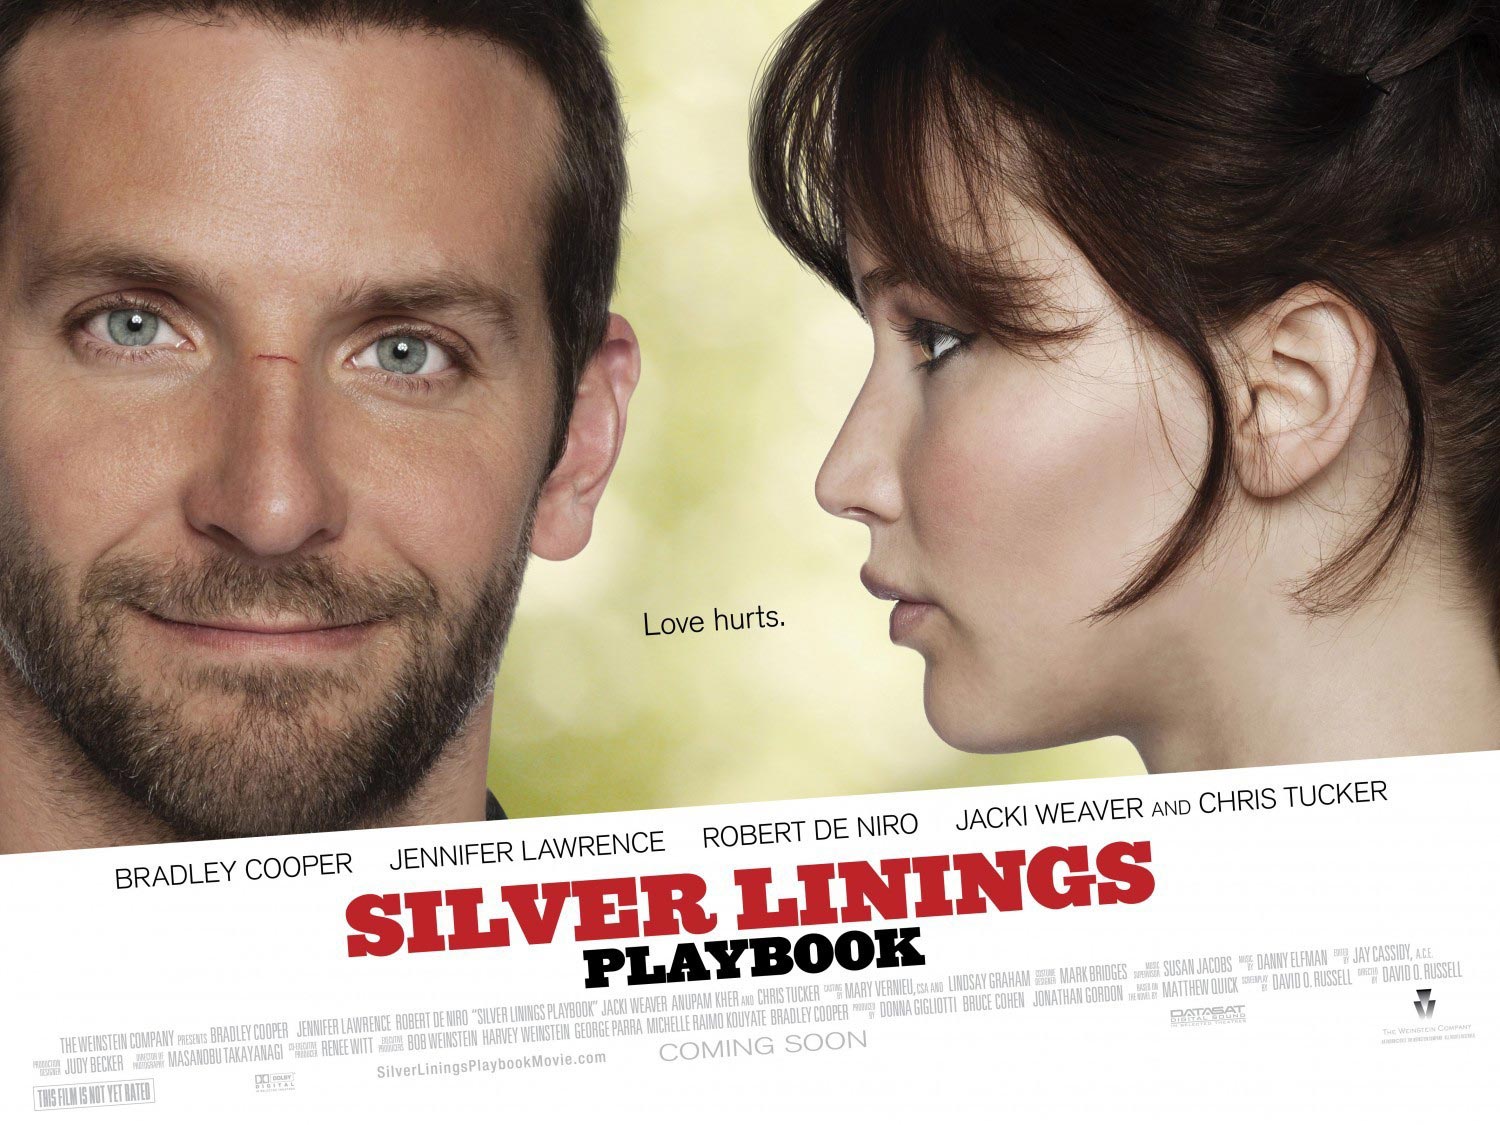 “Silver Linings Playbook” ganó en los premios Spirit antes de la ceremonia de los Oscars